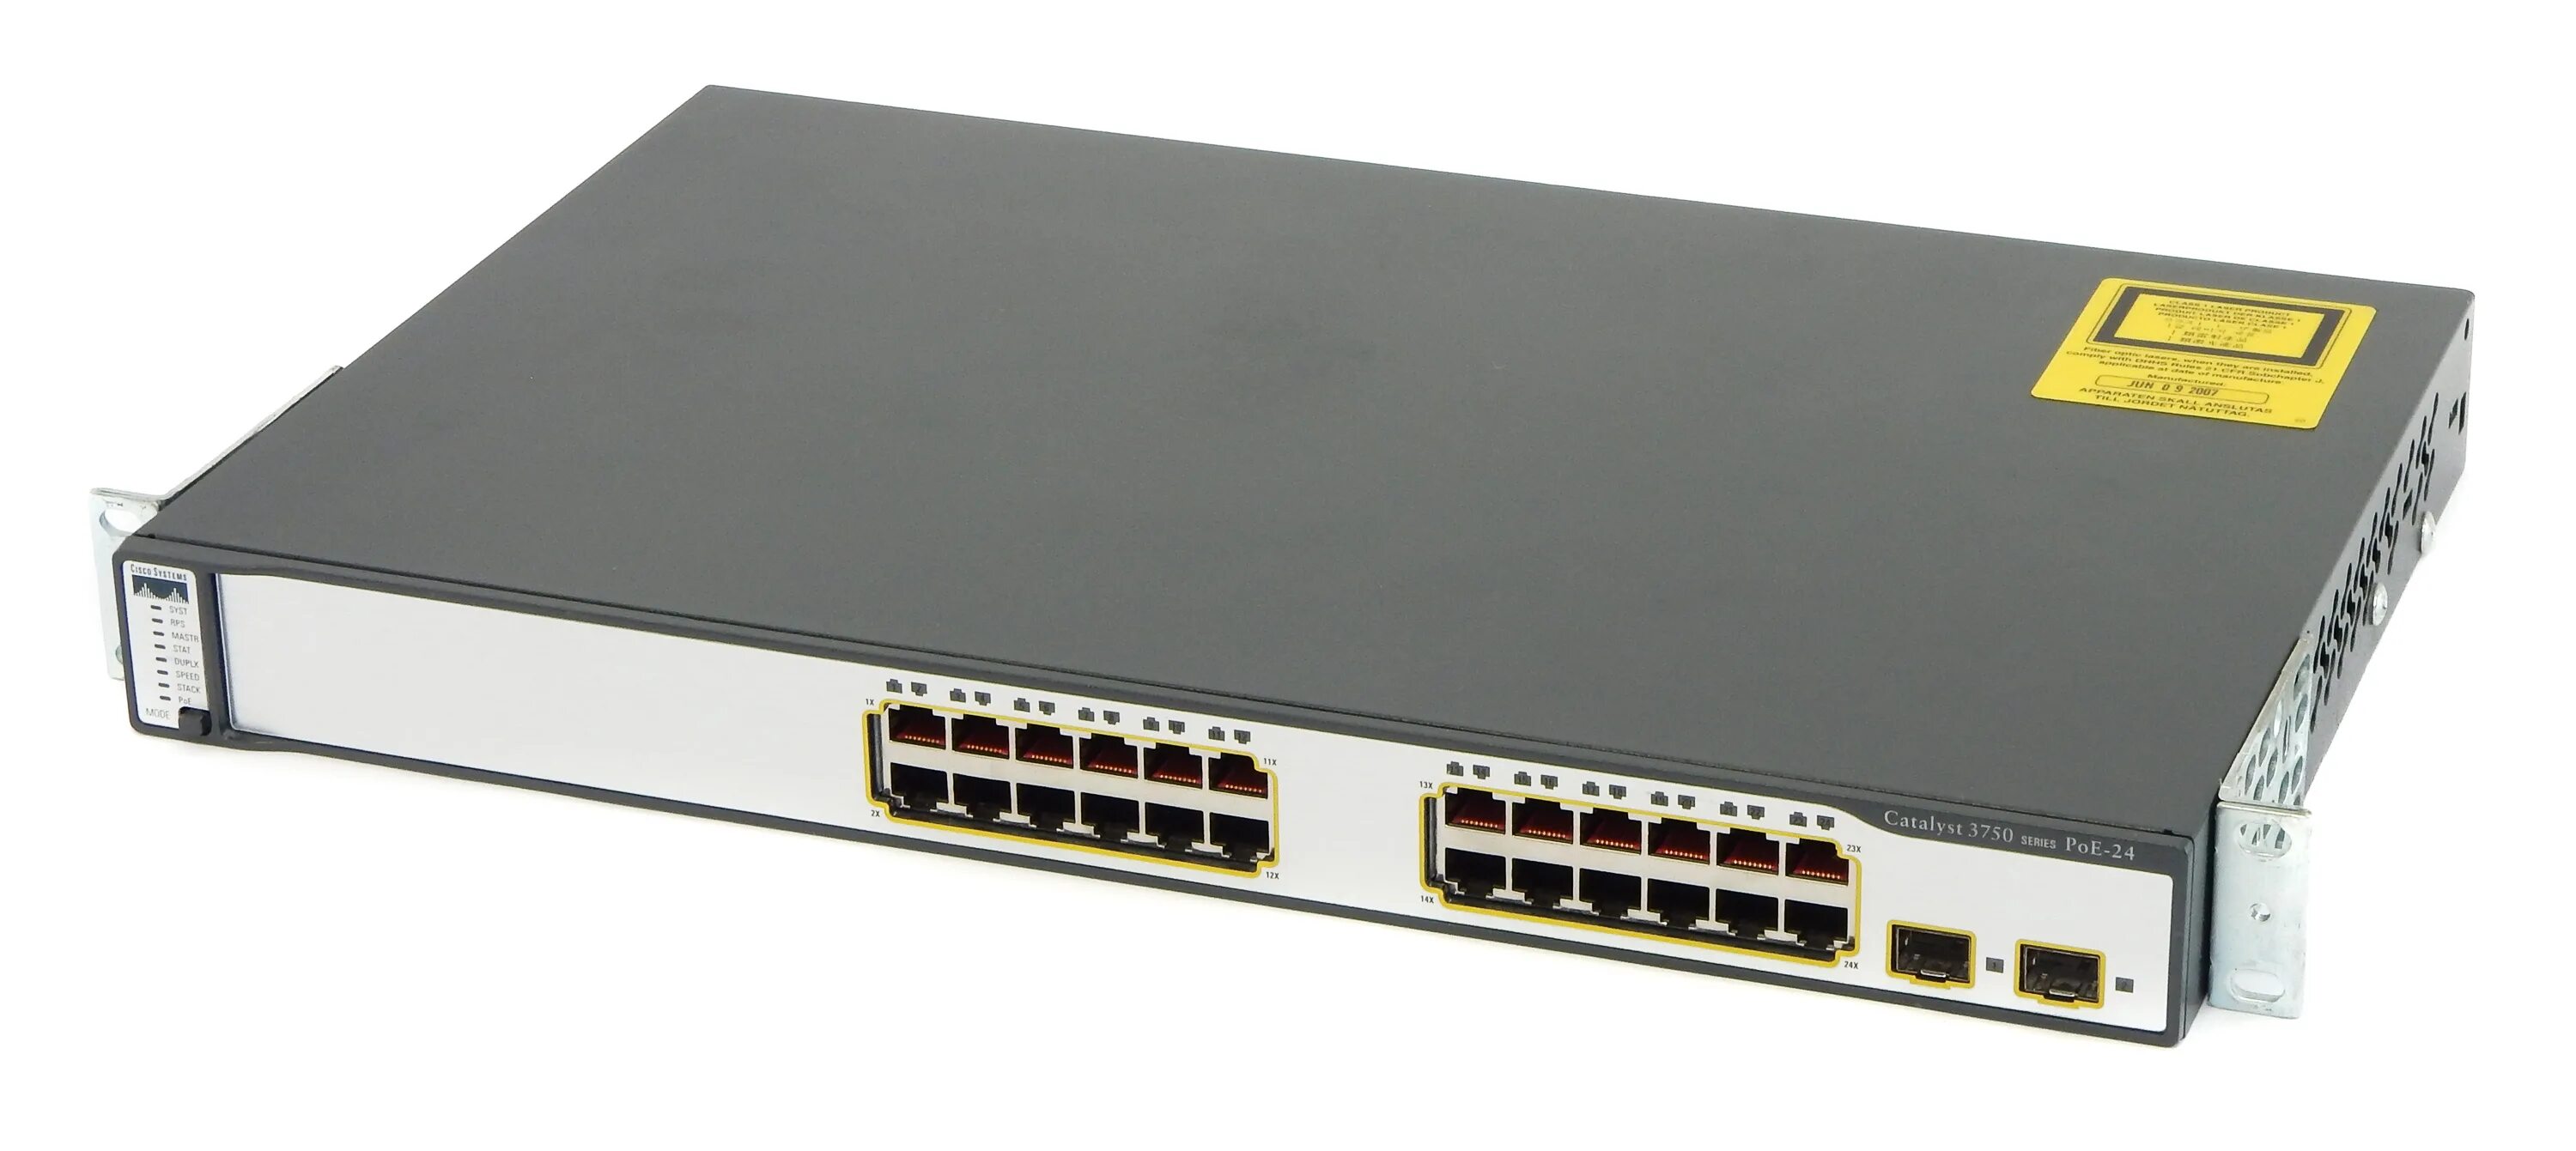 Series 24. Коммутатор Cisco WS-c3750-24ps-e. Cisco 3750x. Cisco 881 POE Port. 3750-24 24sfp.